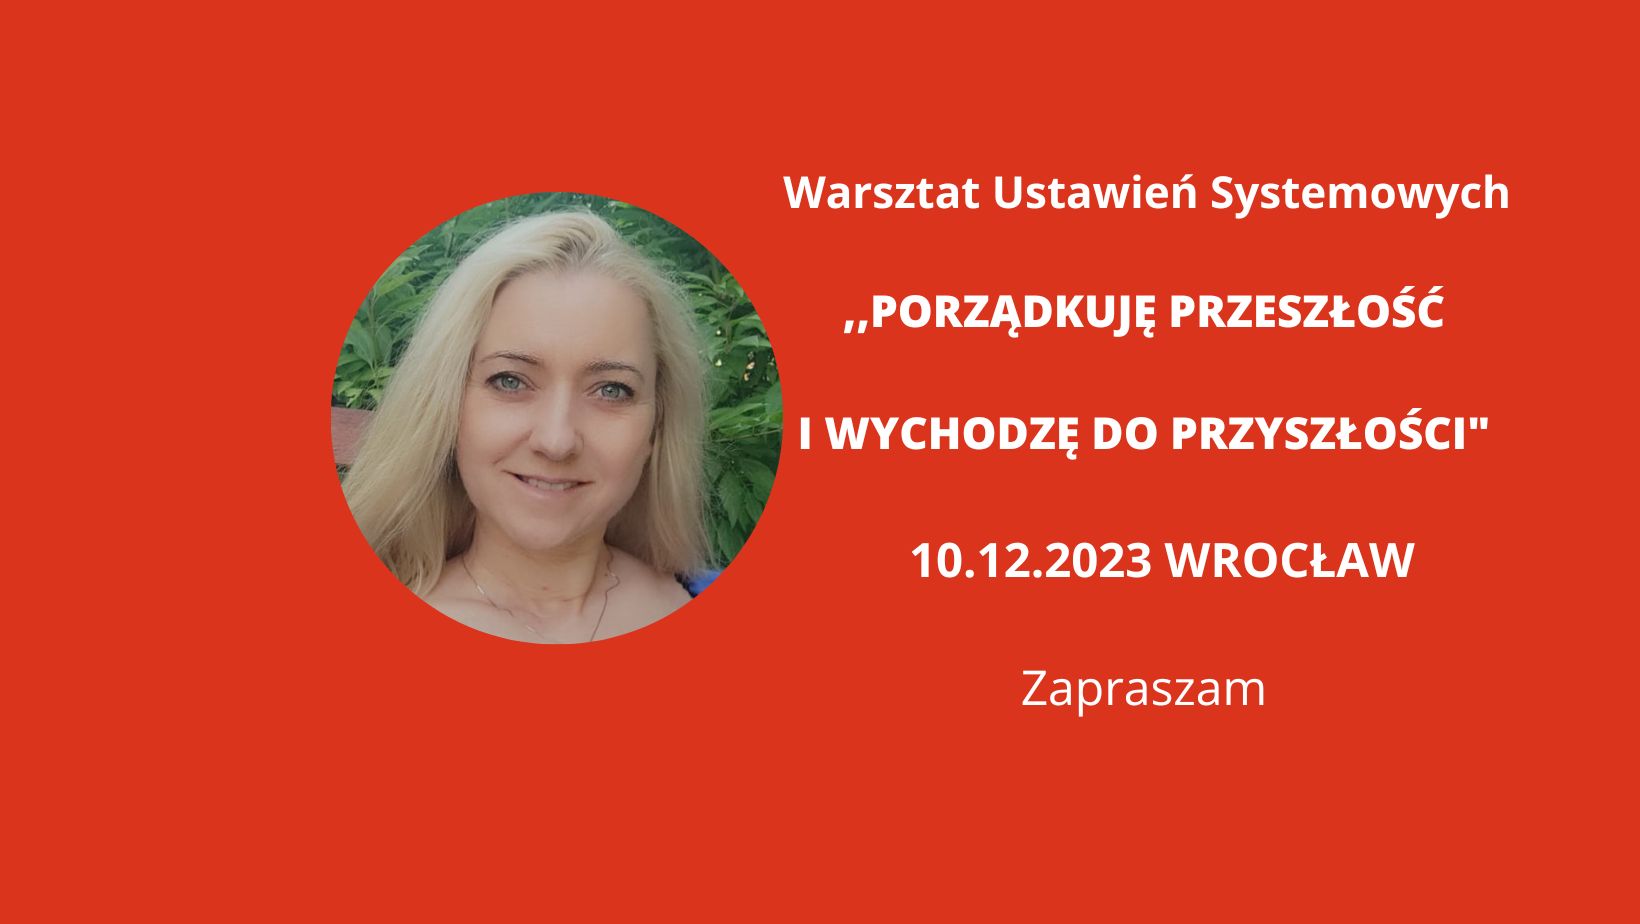 You are currently viewing 10.12.2023r. Wrocław „Porządkuję przeszłość i wychodzę do przyszłości” Warsztat Ustawień Systemowych